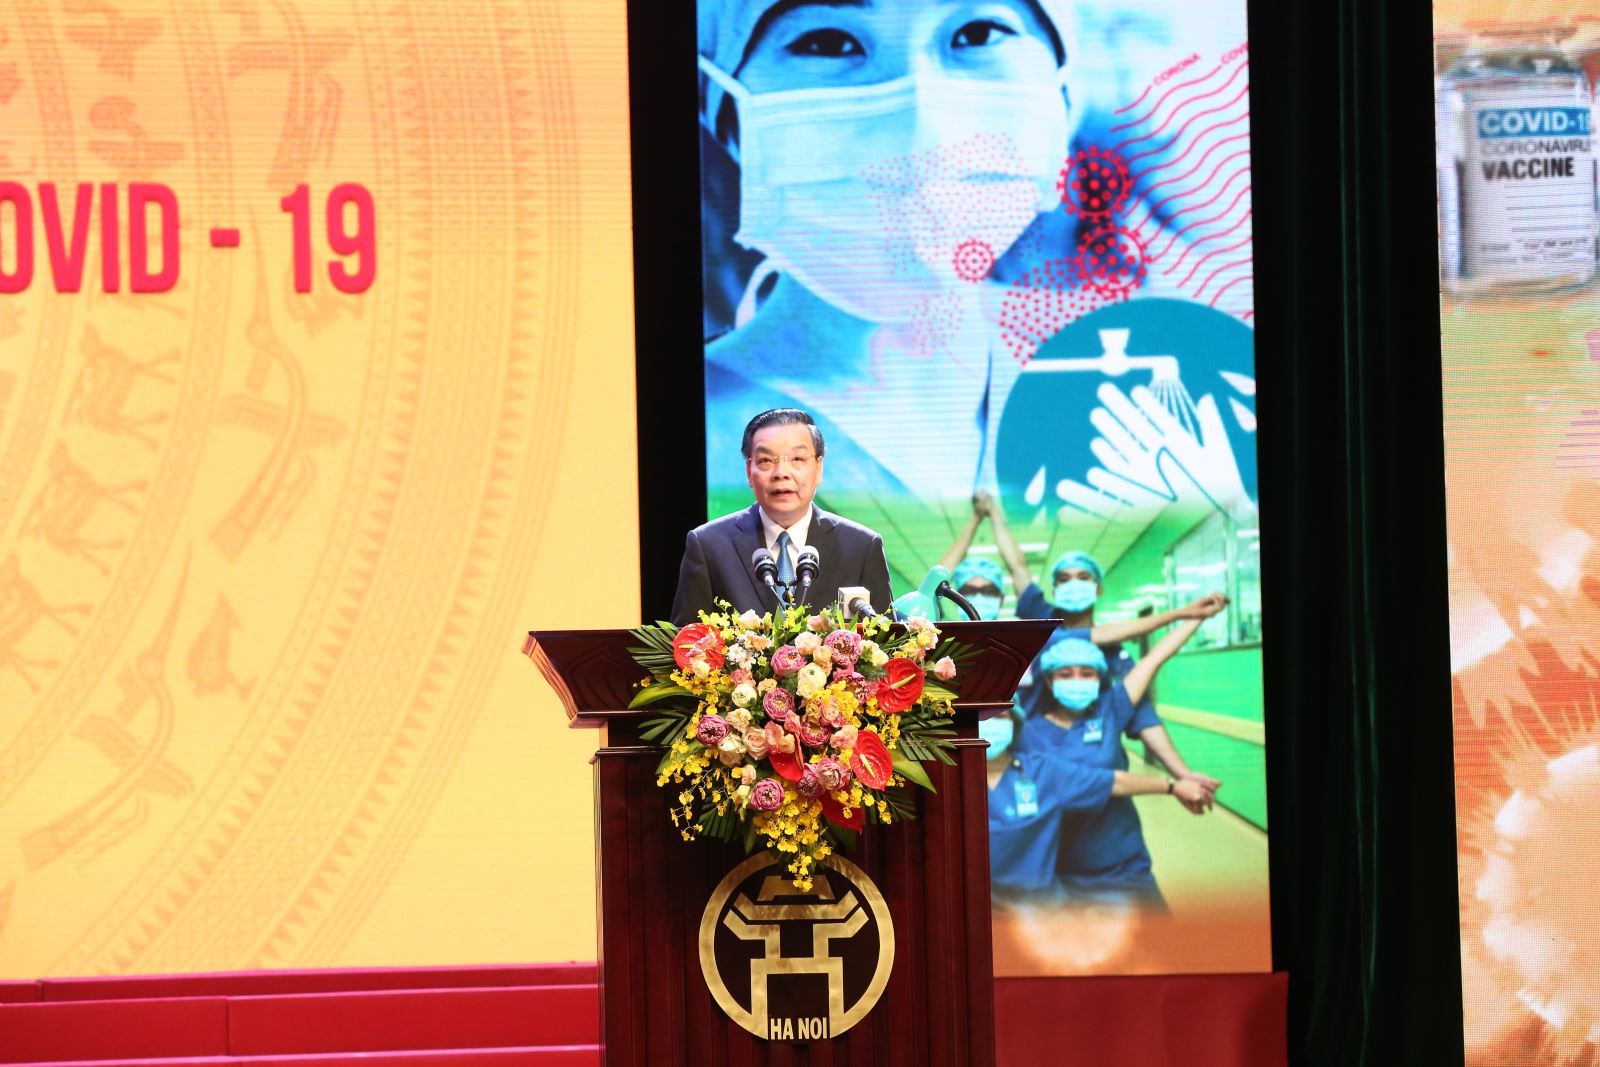 23 min 2 - Chung tay cùng Hà Nội đẩy lùi Covid-19, Tập đoàn Sun Group ủng hộ 55 tỷ đồng mua vắc-xin